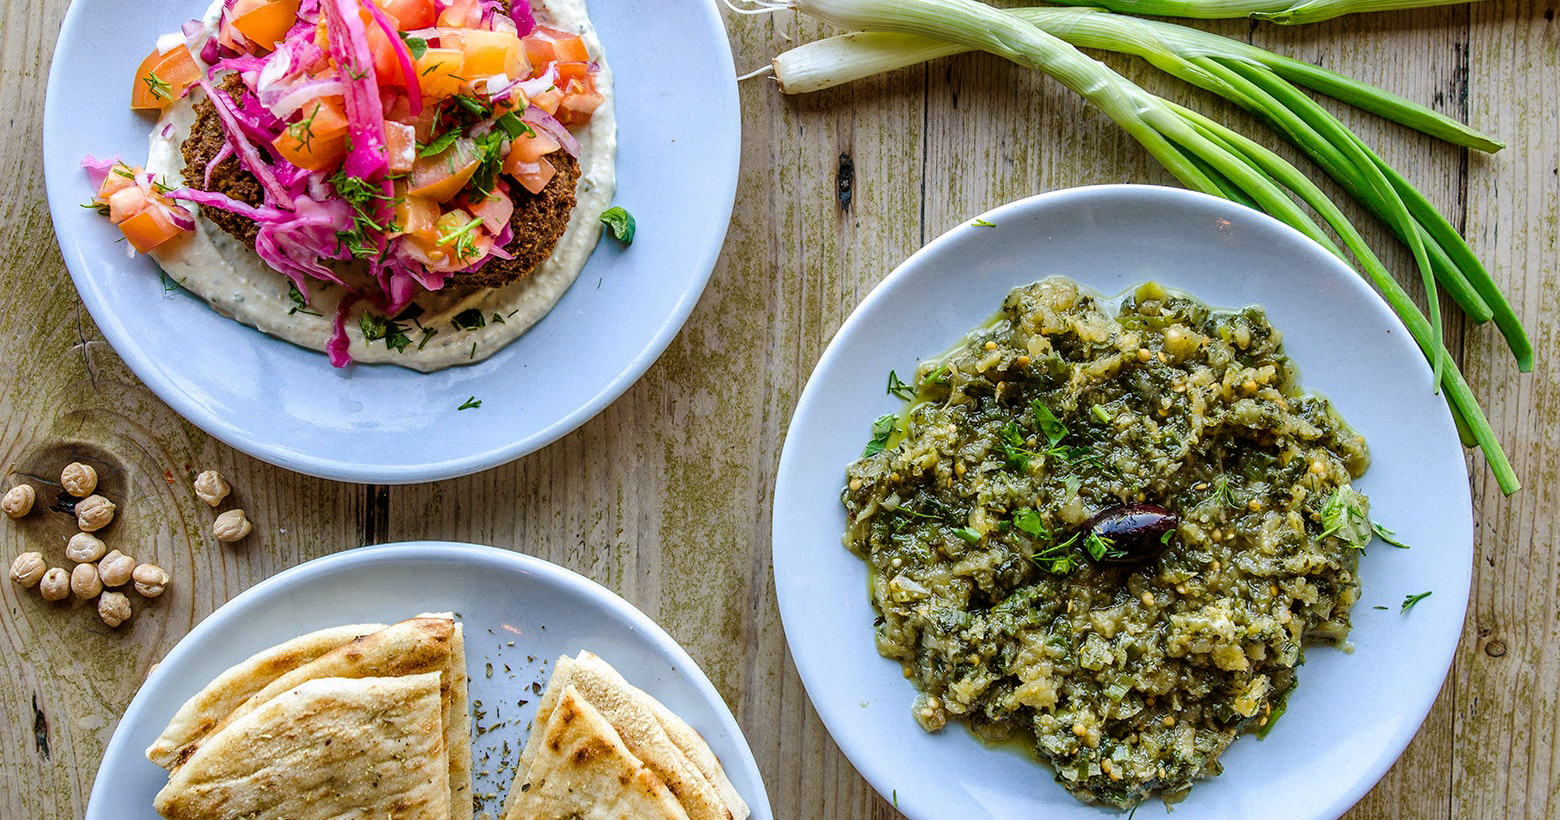 The Real Greek - Greek Food & Ingredients - Vegan Menu